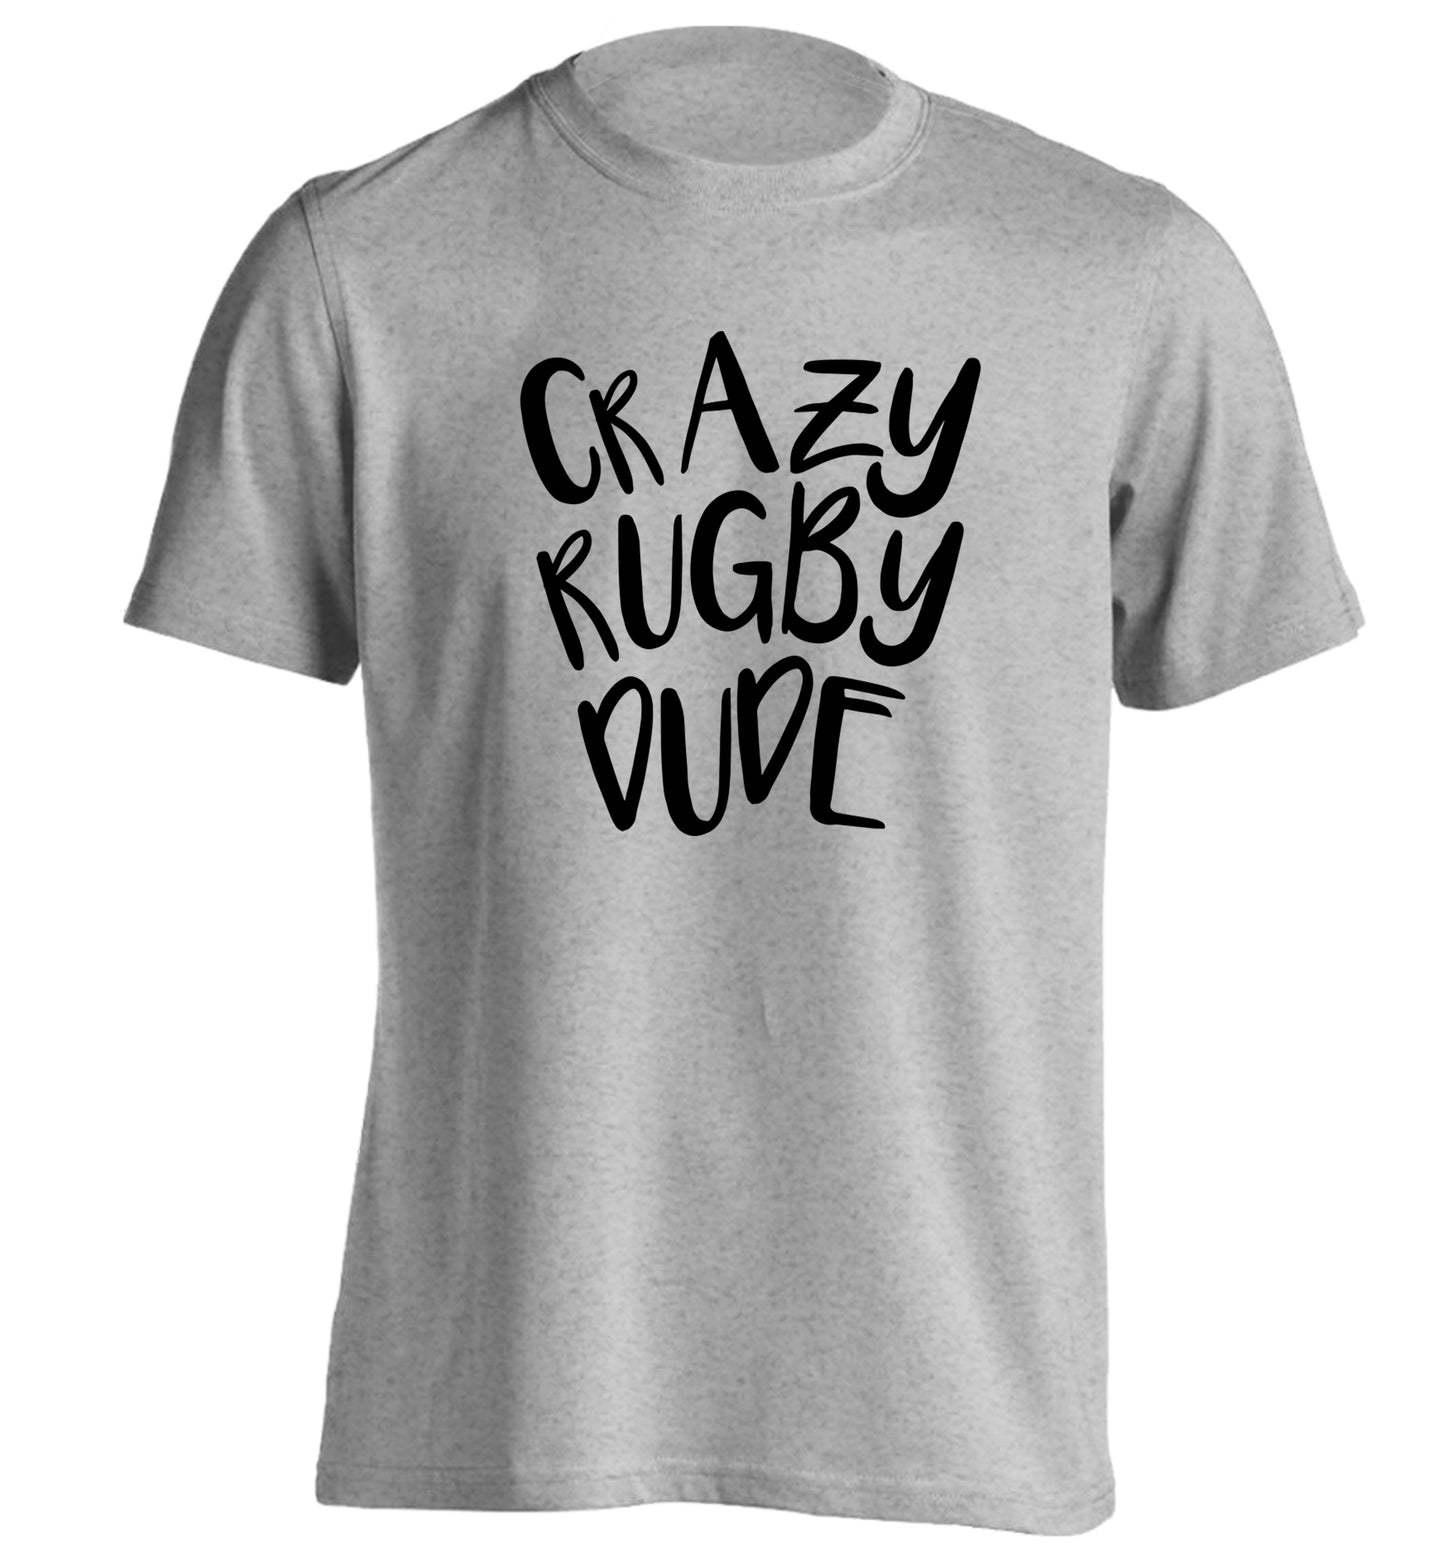 Crazy rugby dude adults unisex grey Tshirt 2XL